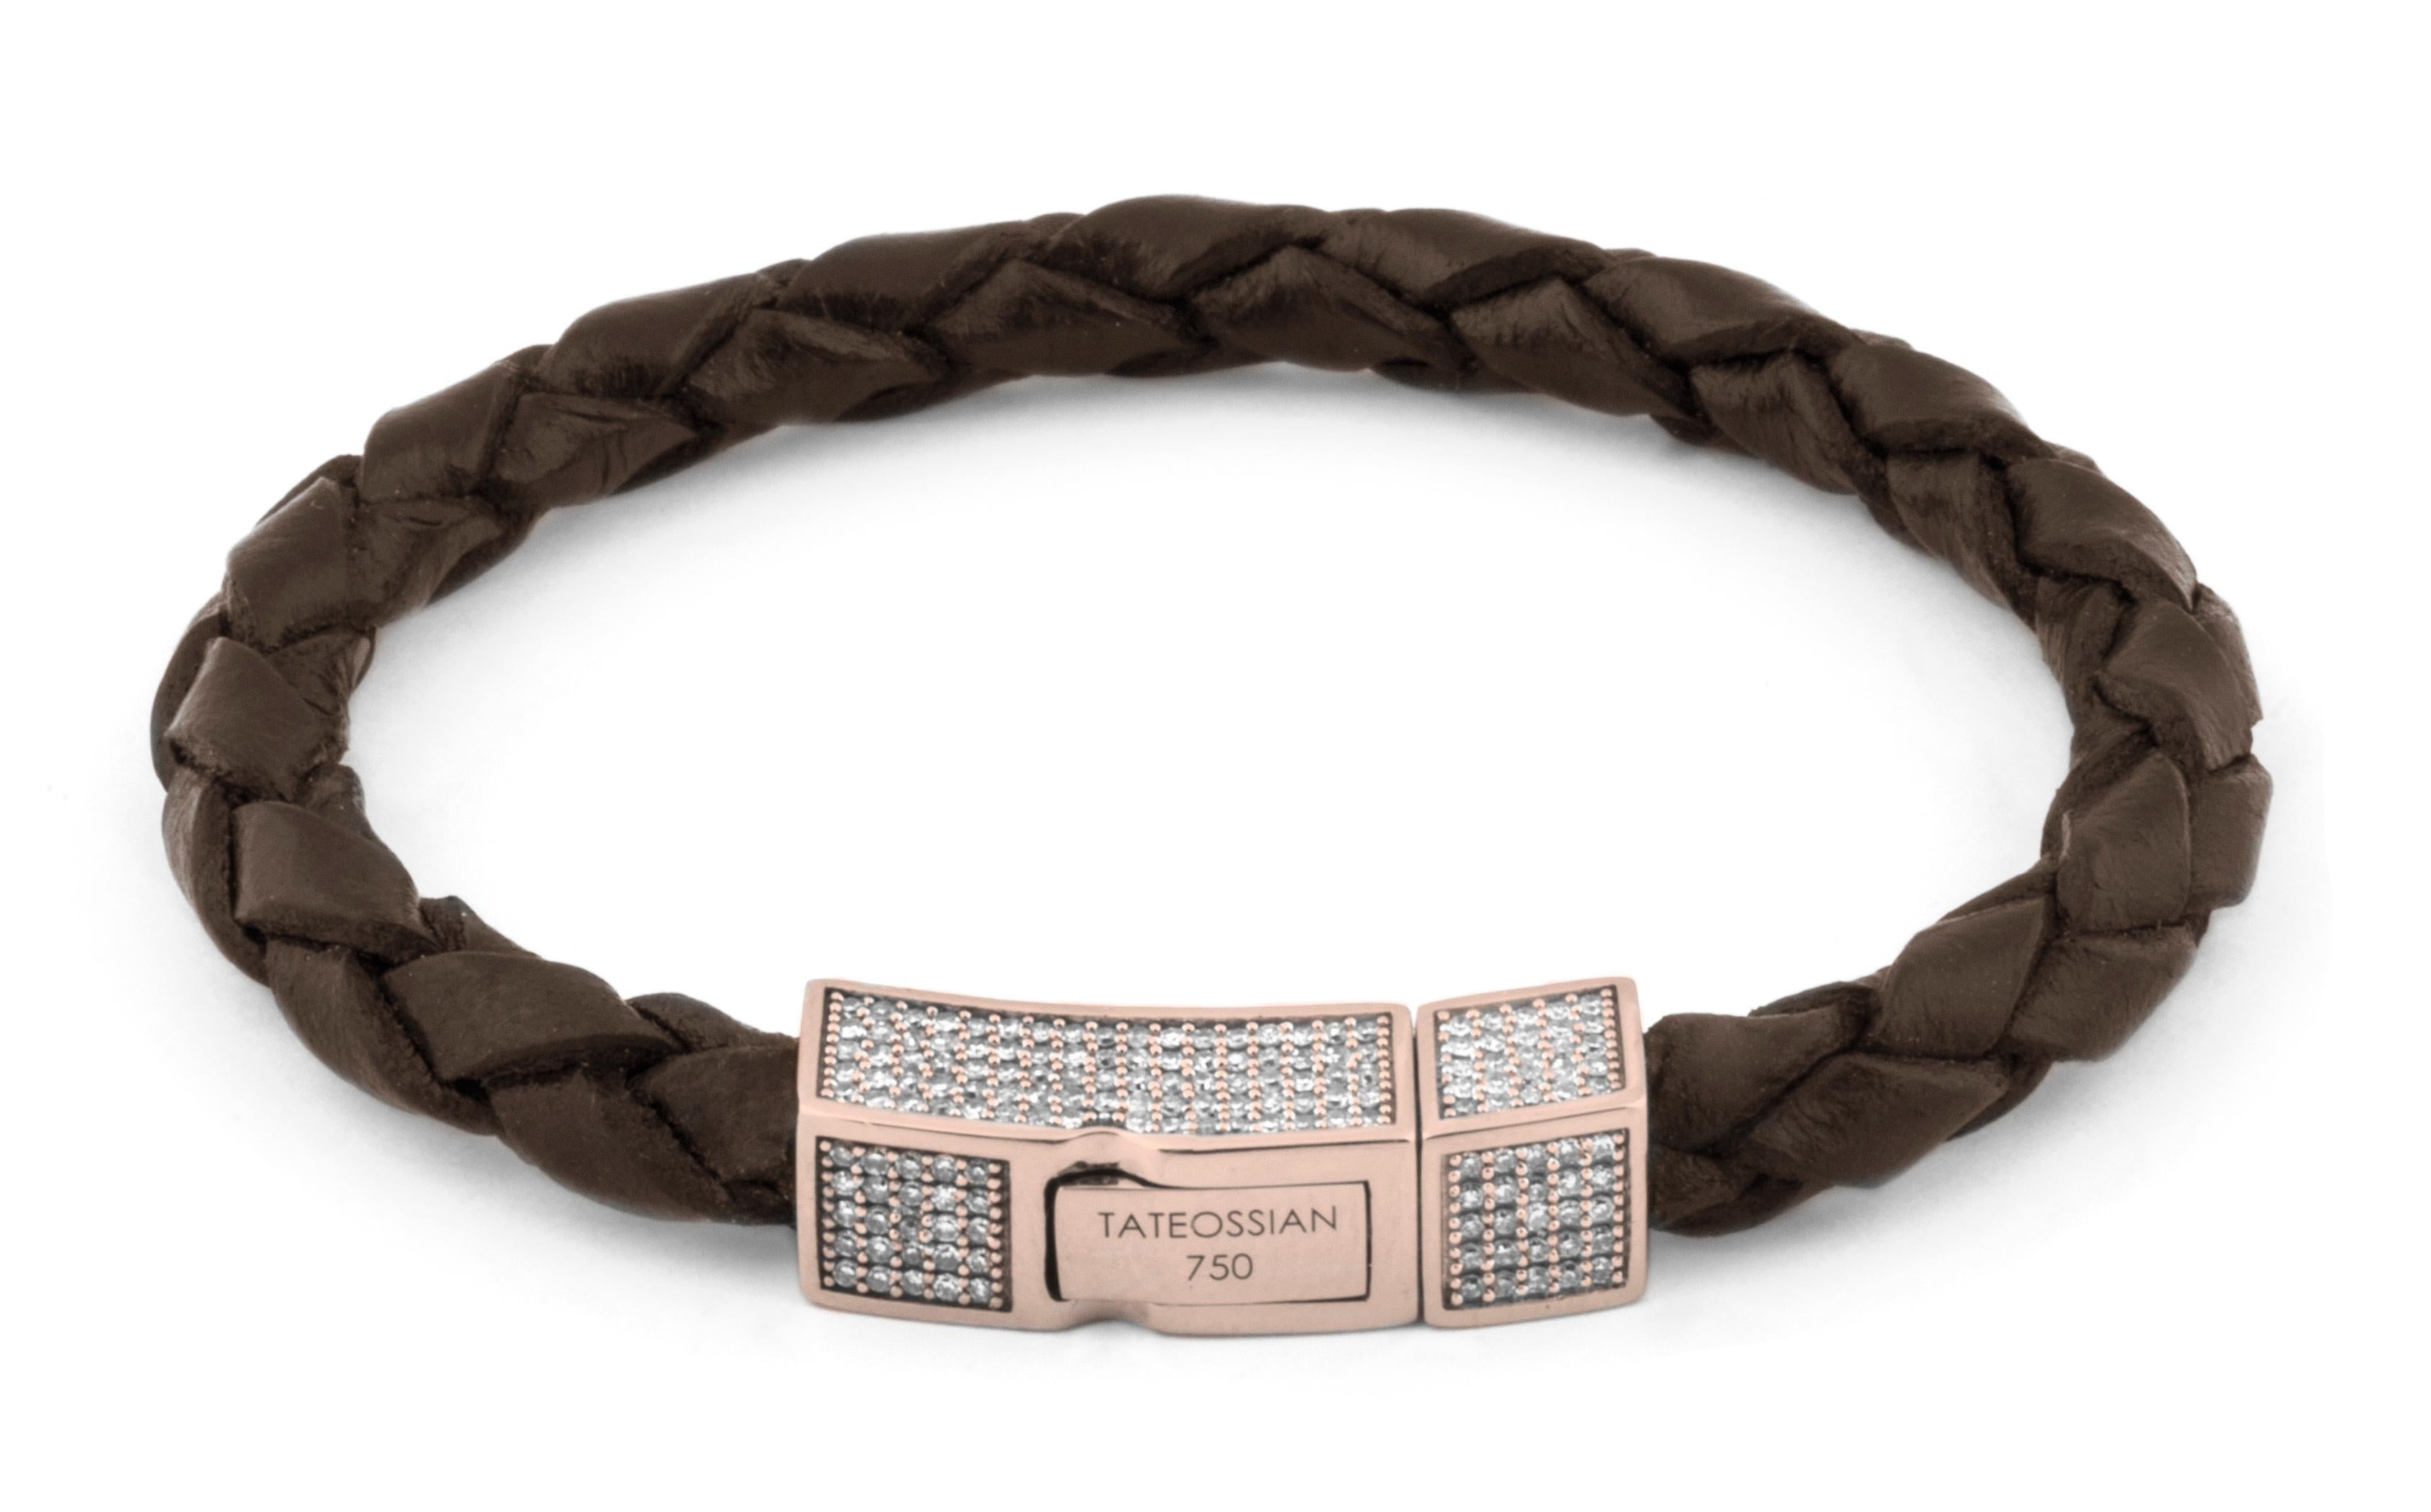 Une version luxueuse du bracelet Scoubidou en cuir signé Tateossian, avec un fermoir en or 18 carats. Le fermoir est magnifiquement recouvert d'un pavage de diamants blancs (couleur HI, qualité SI) qui ont été sélectionnés et sertis à la main au